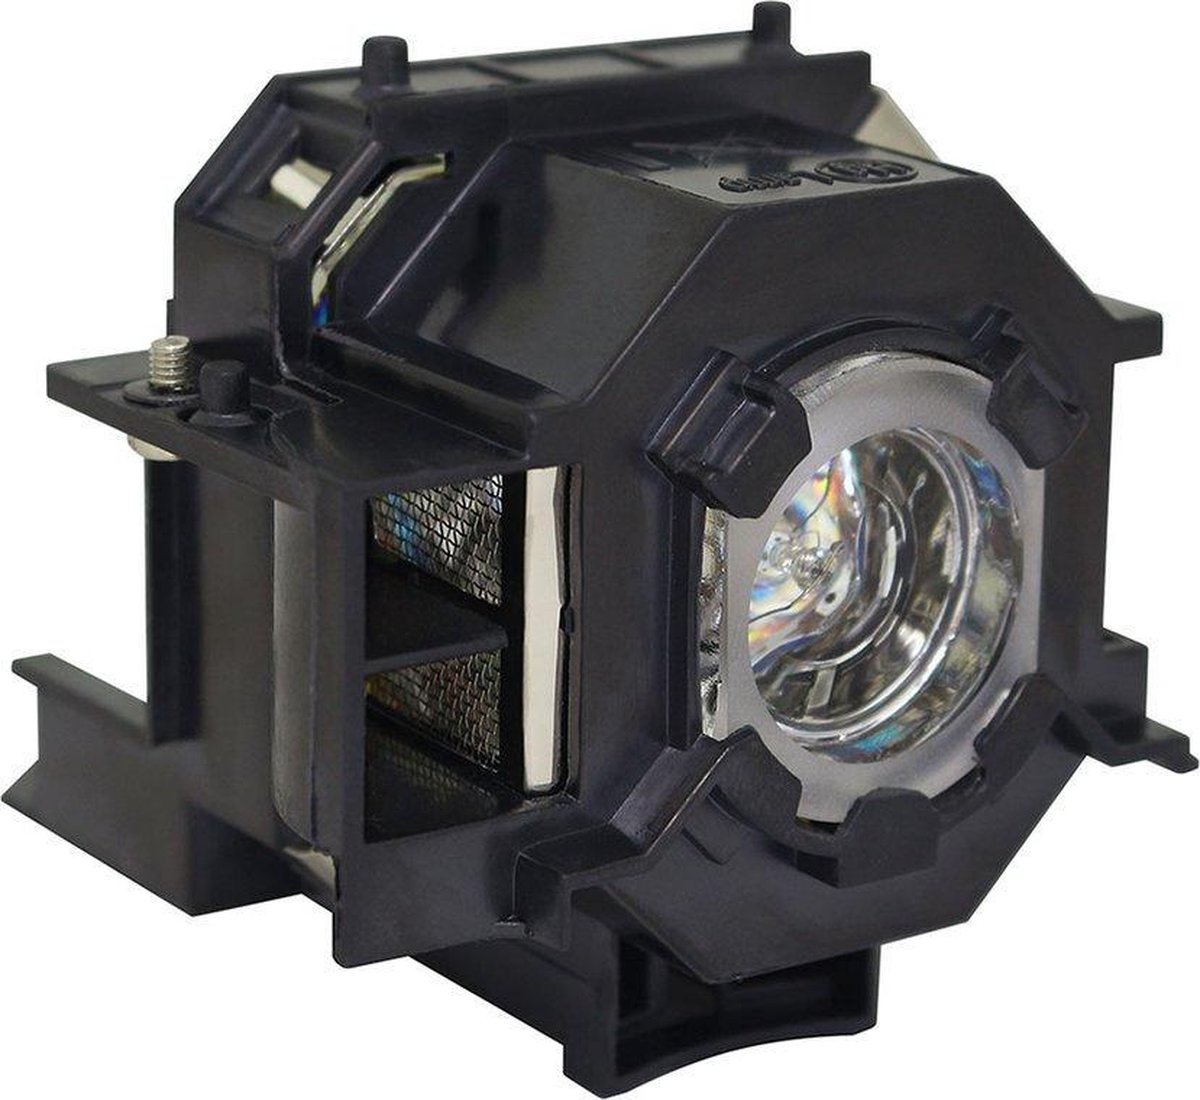 Beamerlamp geschikt voor de EPSON EMP-260 beamer, lamp code LP41 / V13H010L41. Bevat originele P-VIP lamp, prestaties gelijk aan origineel.